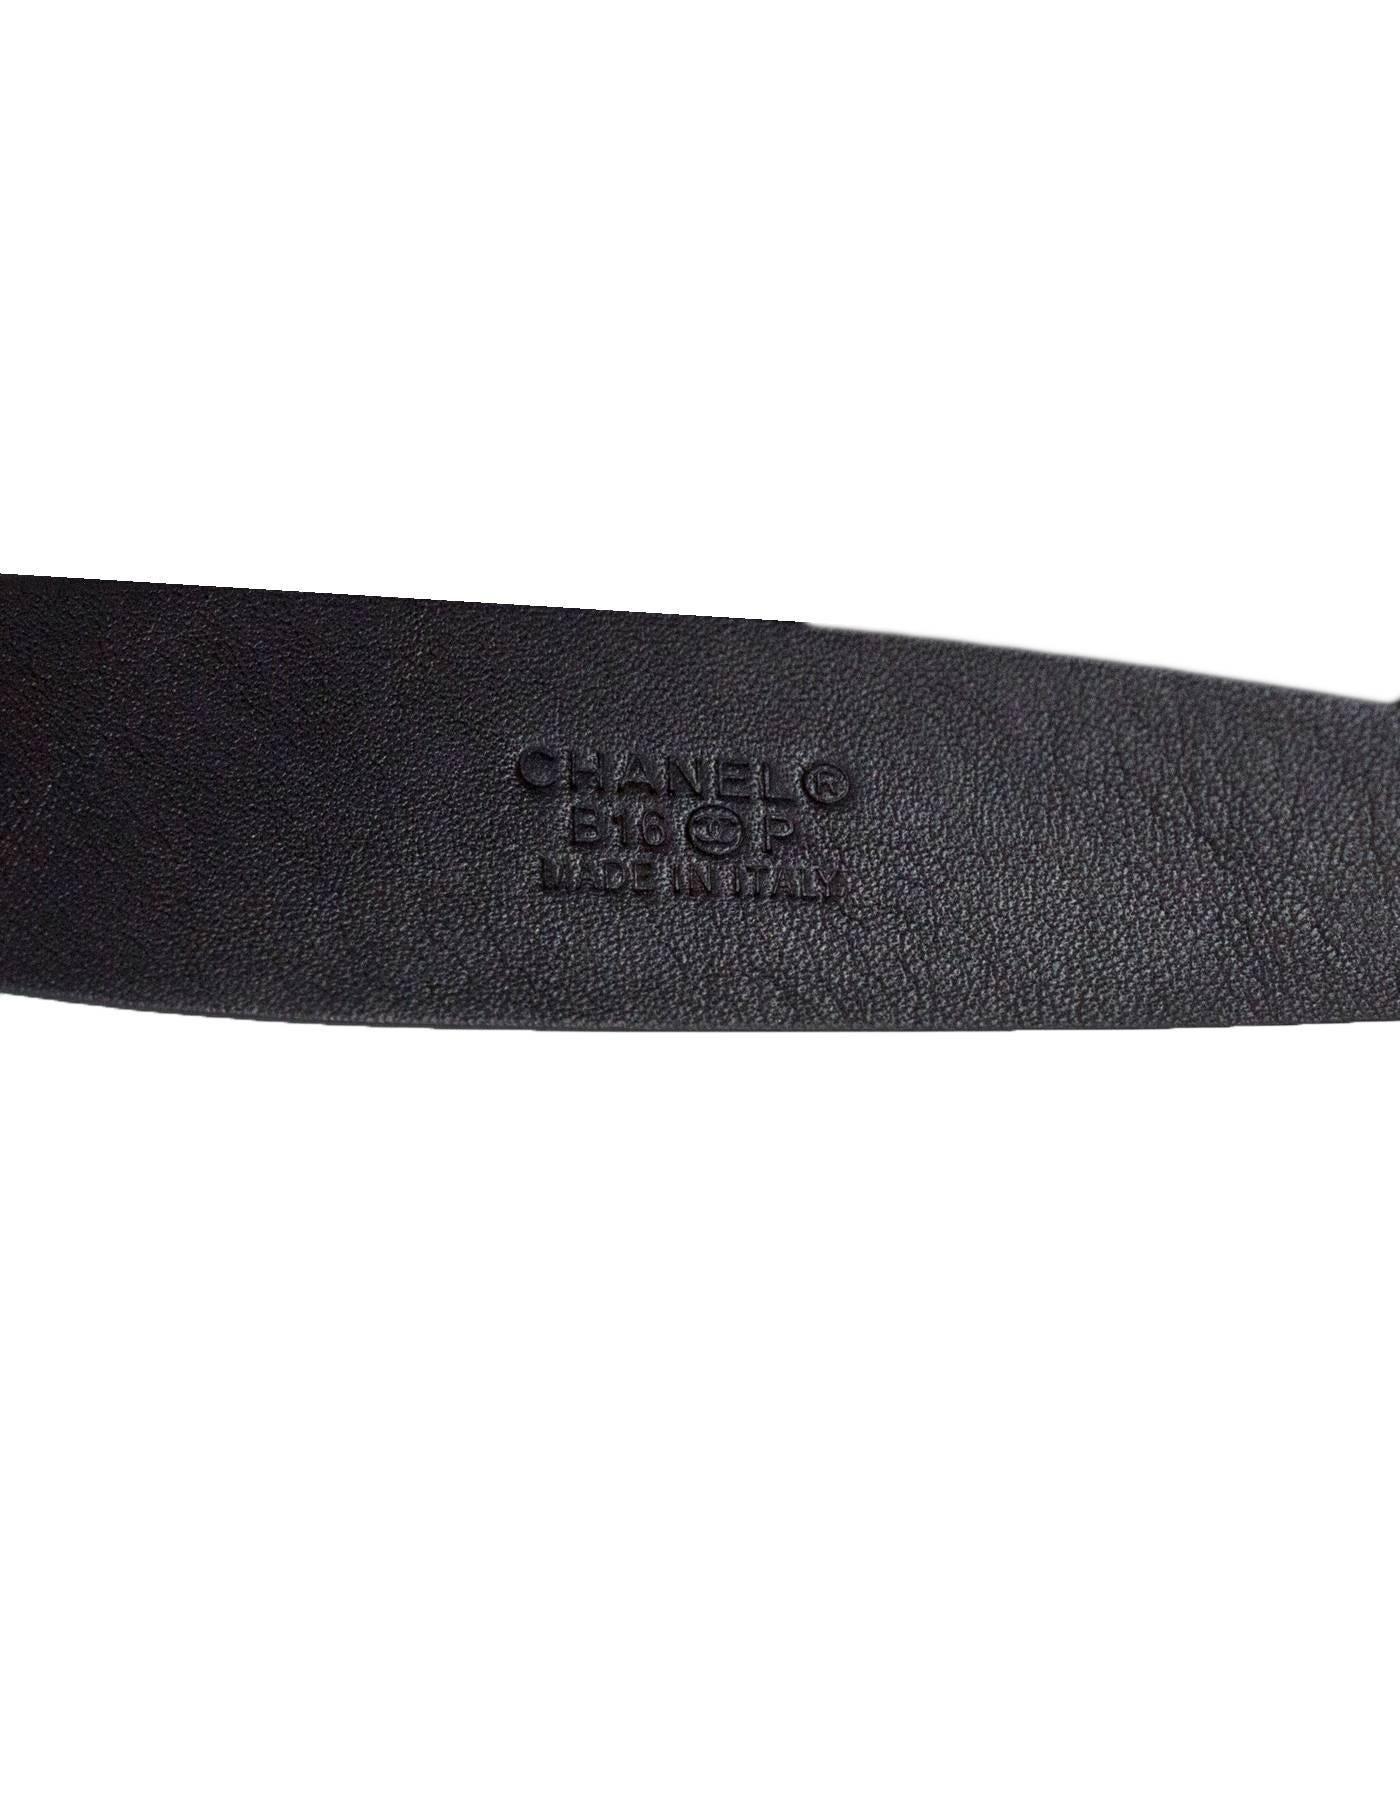 Women's Chanel Black Leather & Pale Goldtone CC Belt Sz 85